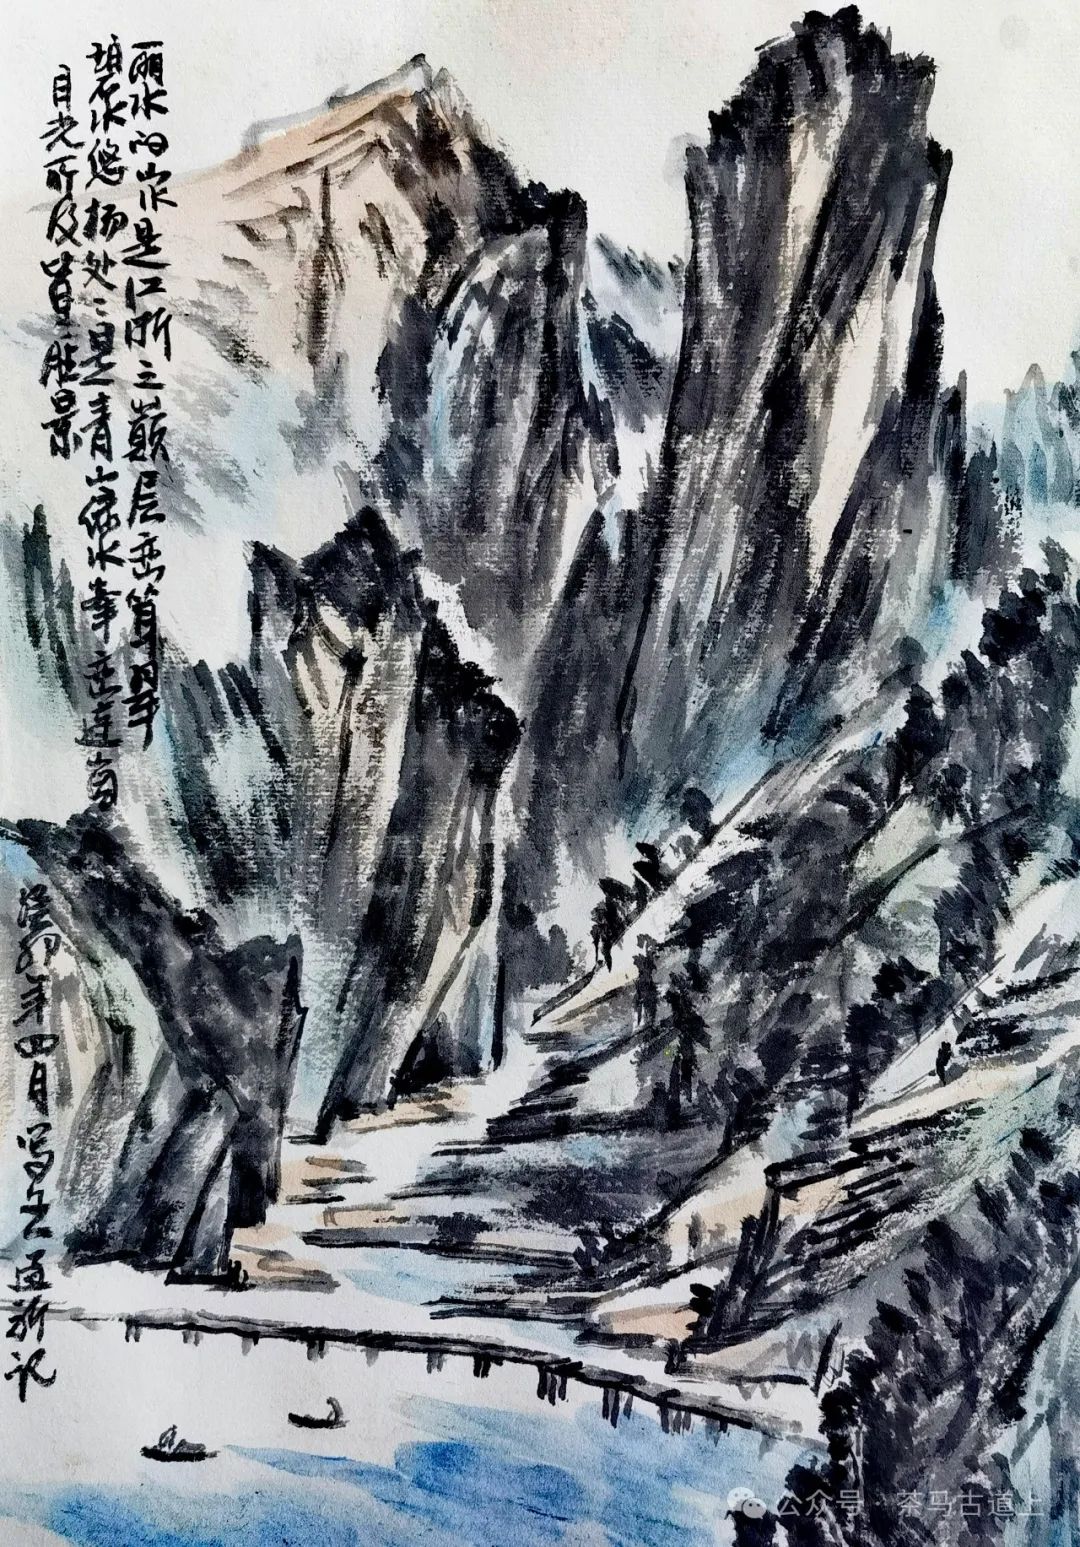 跟随画家舒建新沿瓯江山水诗路，寻找丽水的诗意世界